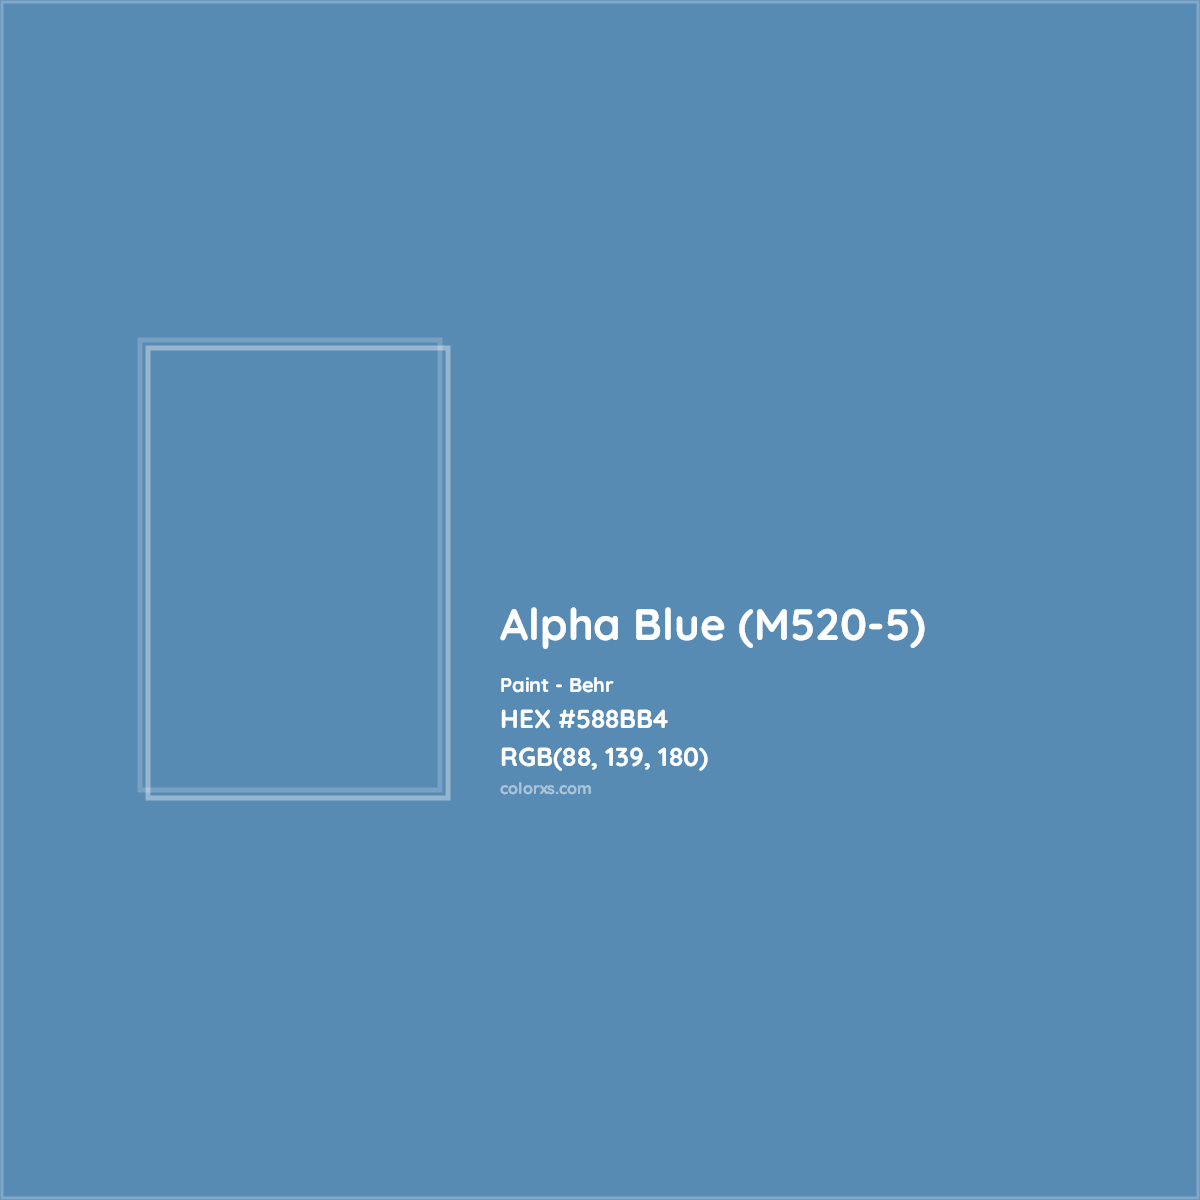 HEX #588BB4 Alpha Blue (M520-5) Paint Behr - Color Code